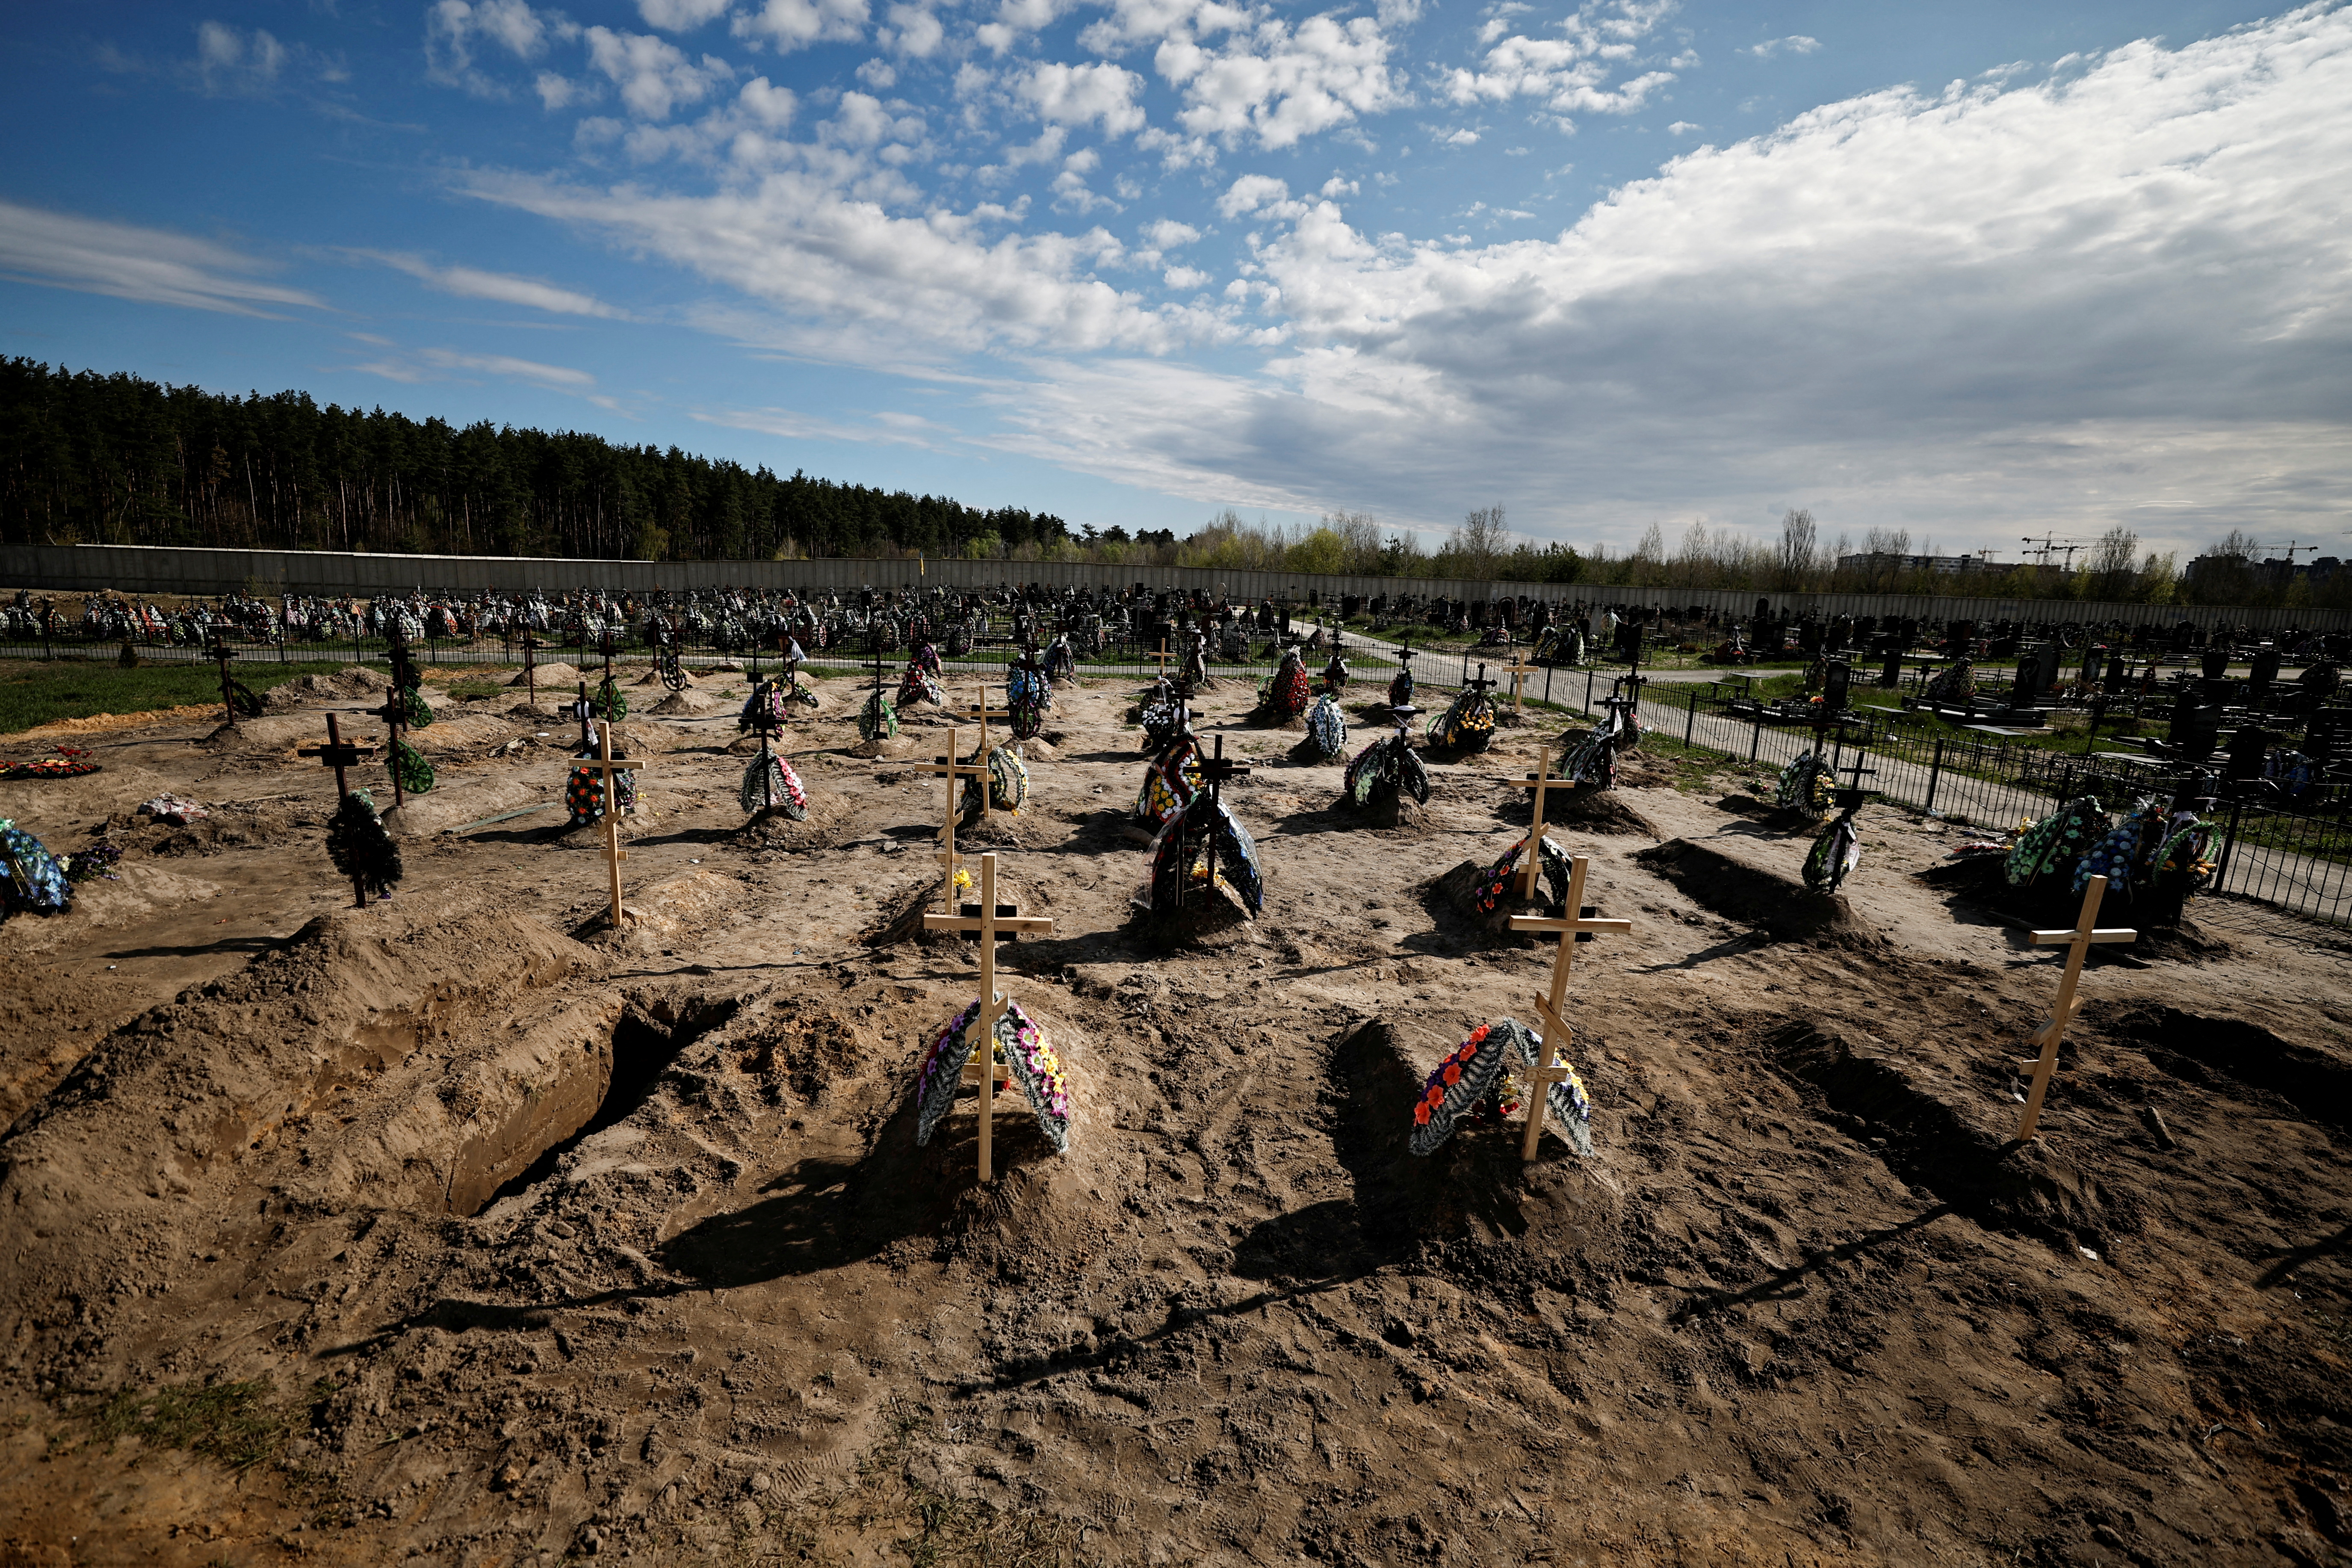 Foto de archivo de las tumbas para las personas asesinadas durante la invasión rusa, en un cementerio en Bucha, región de Kiev, Ucrania, el 28 de abril de 2022 (REUTERS/Zohra Bensemra)